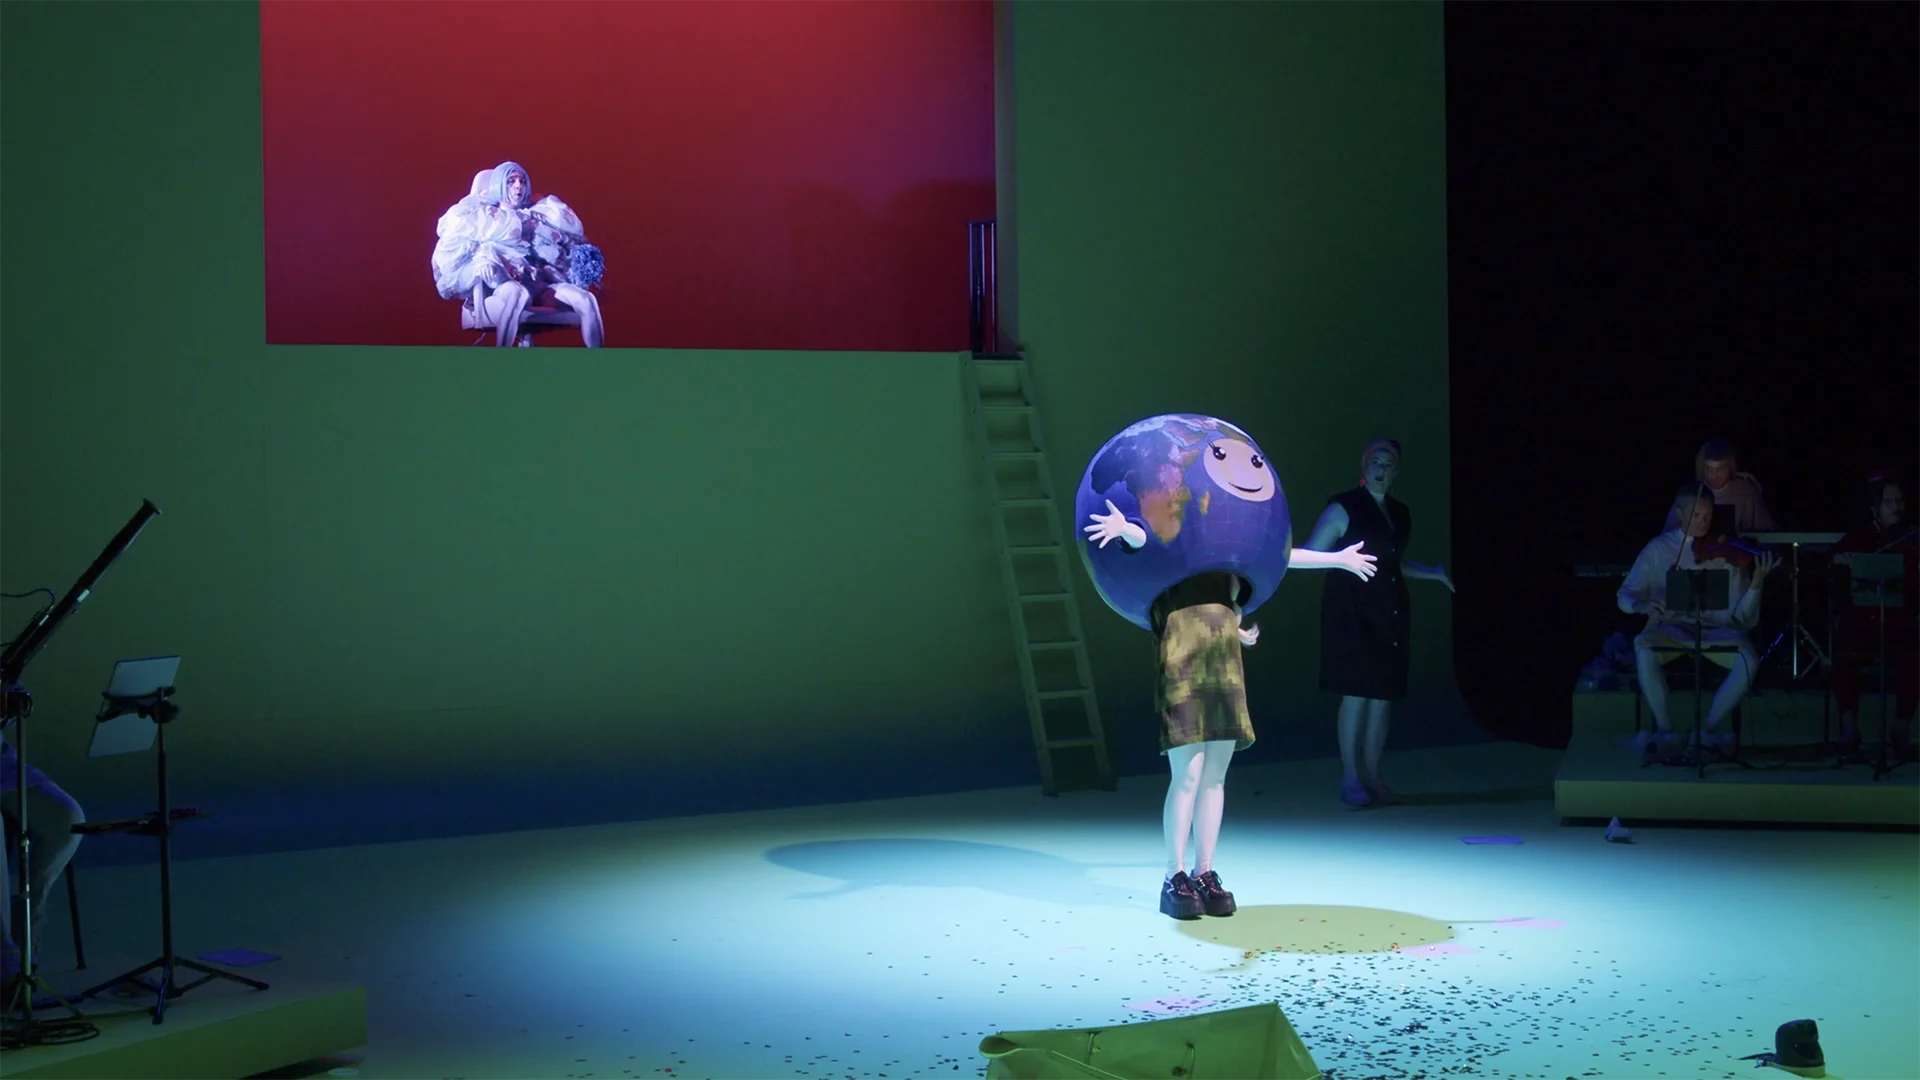 Cornland Studio - Vue d'ensemble d'une scène de théâtre, une femme est déguisée en planète terre au premier plan